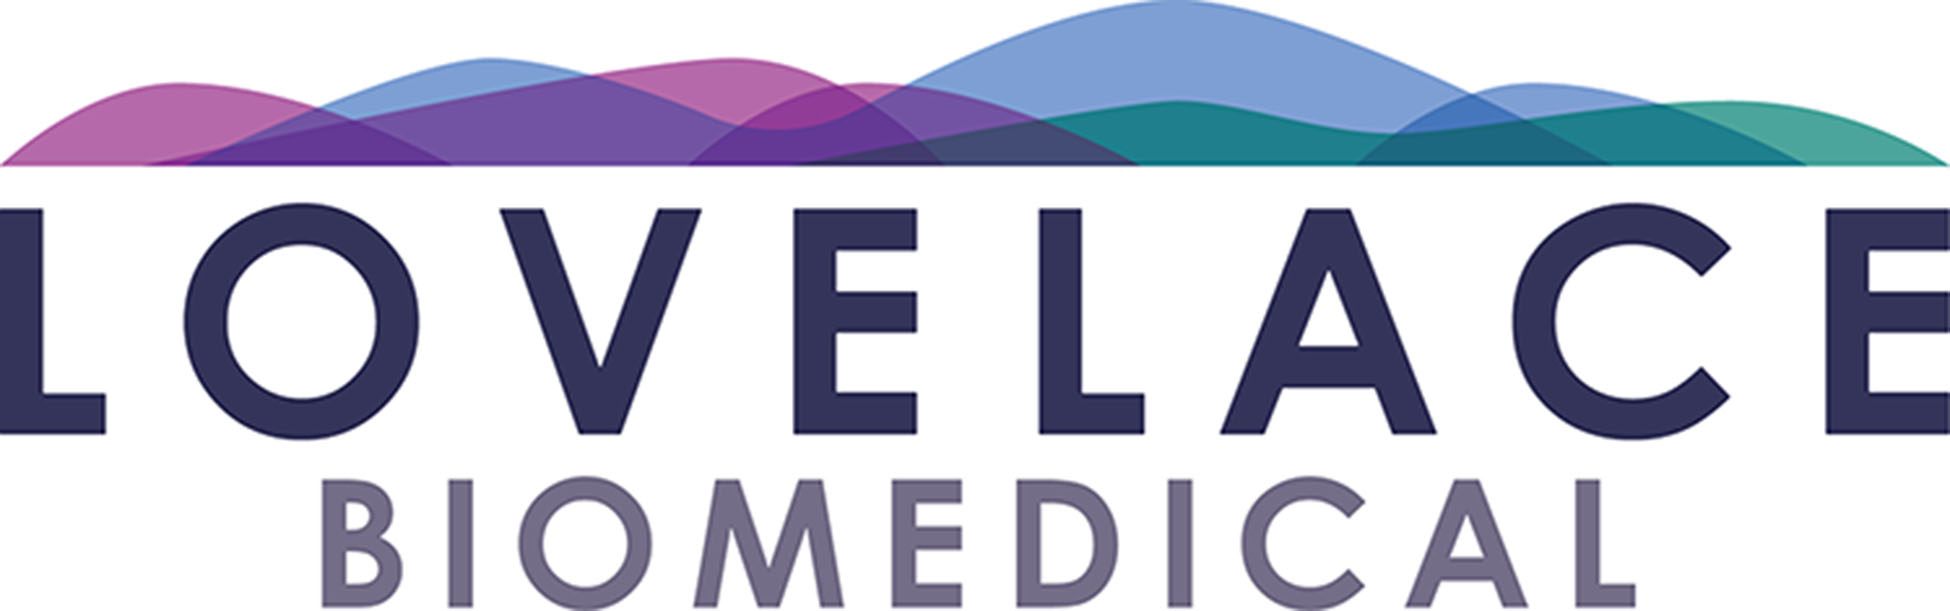 Biomedizinisches Lovelace-Logo